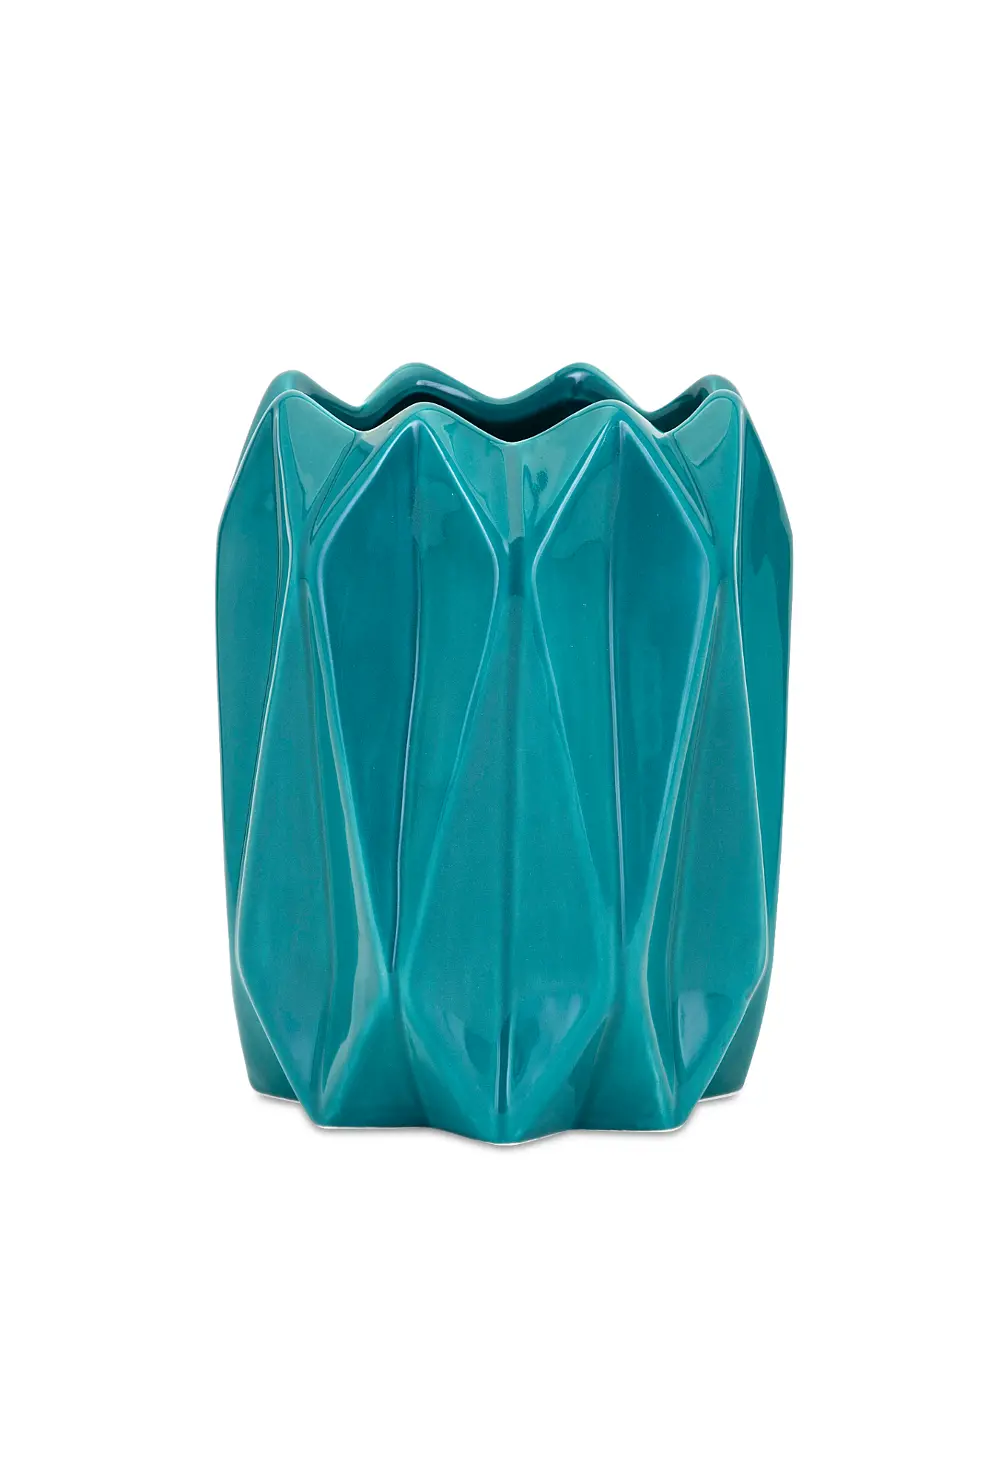 Teal-Blue Ceramic Vase-1